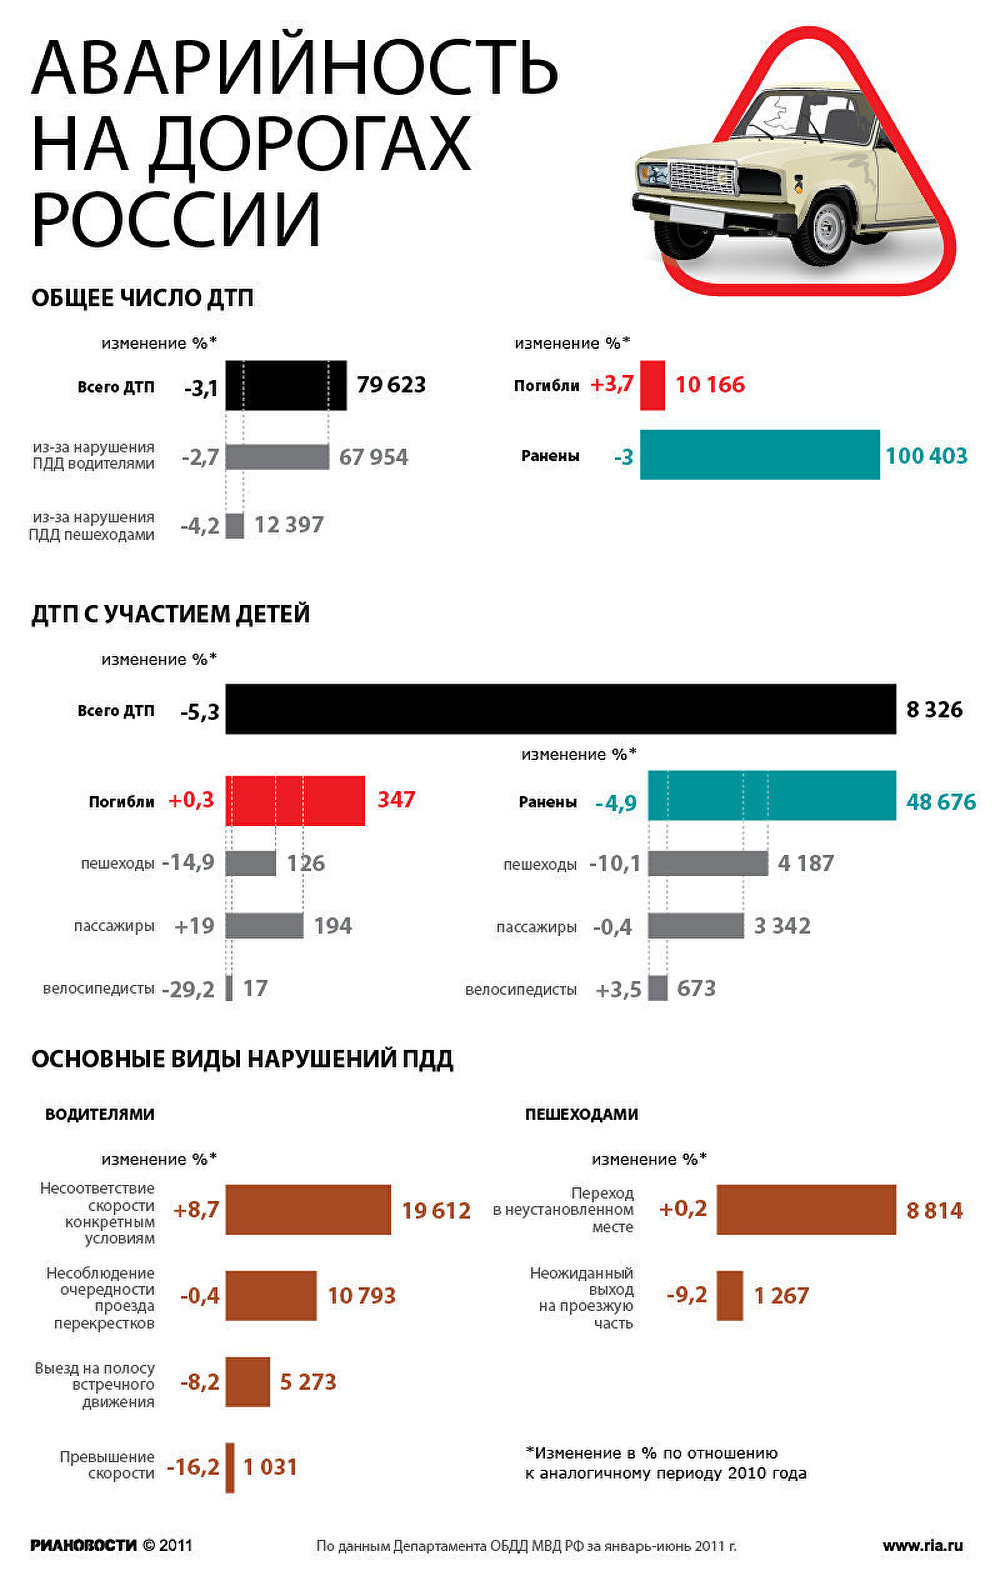 Количество дтп в россии с участием детей